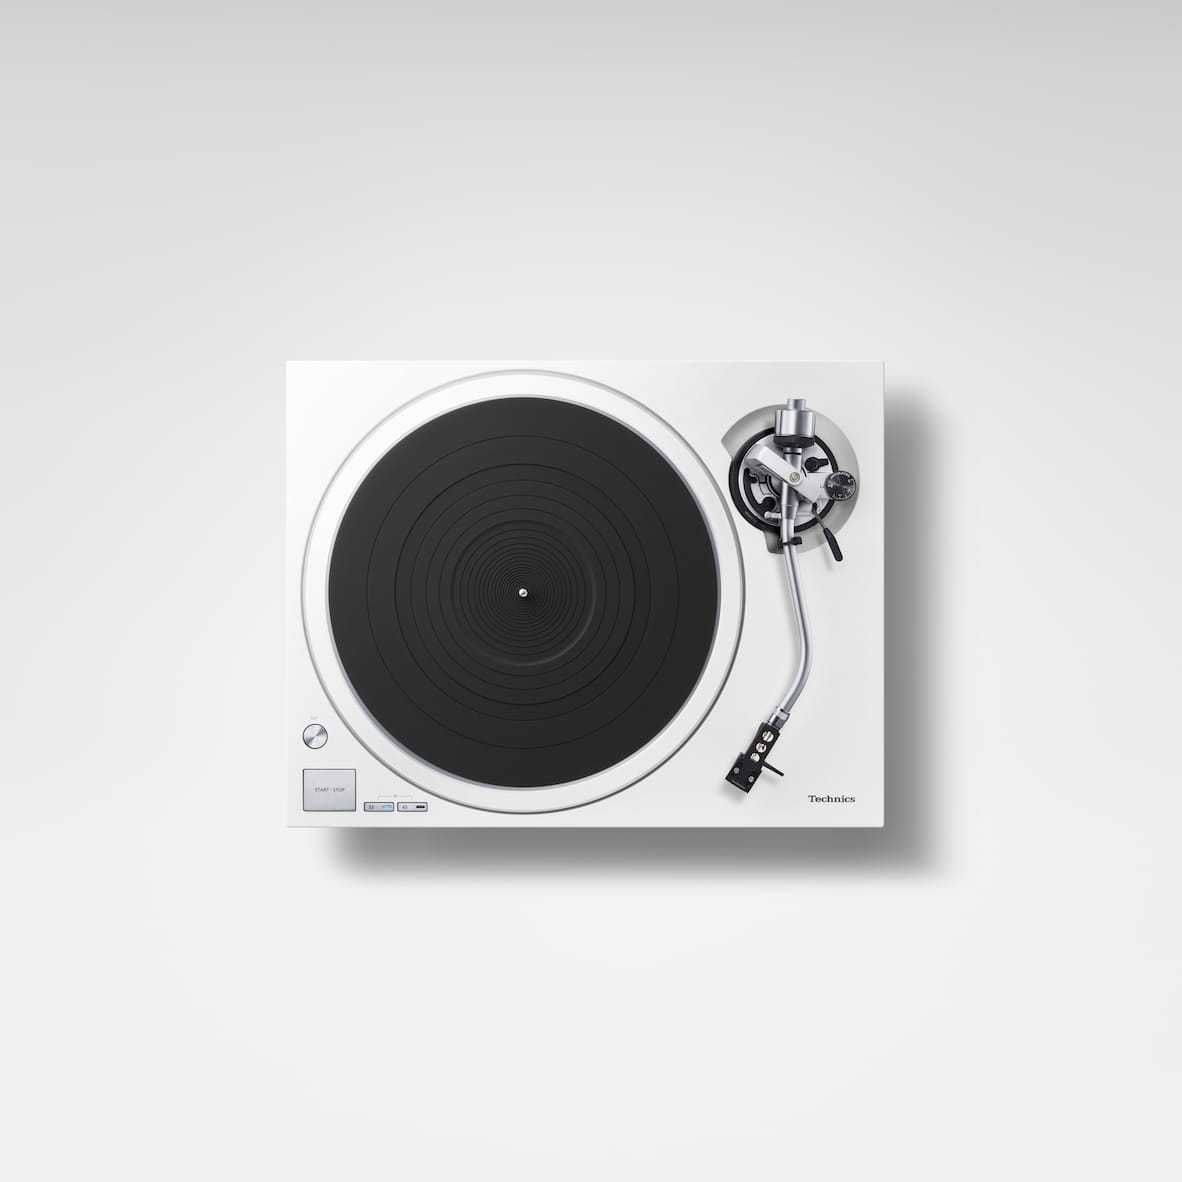 Gramofon Technics SL-1500CEG-S / K / W srebrny czarny biały sprawdź